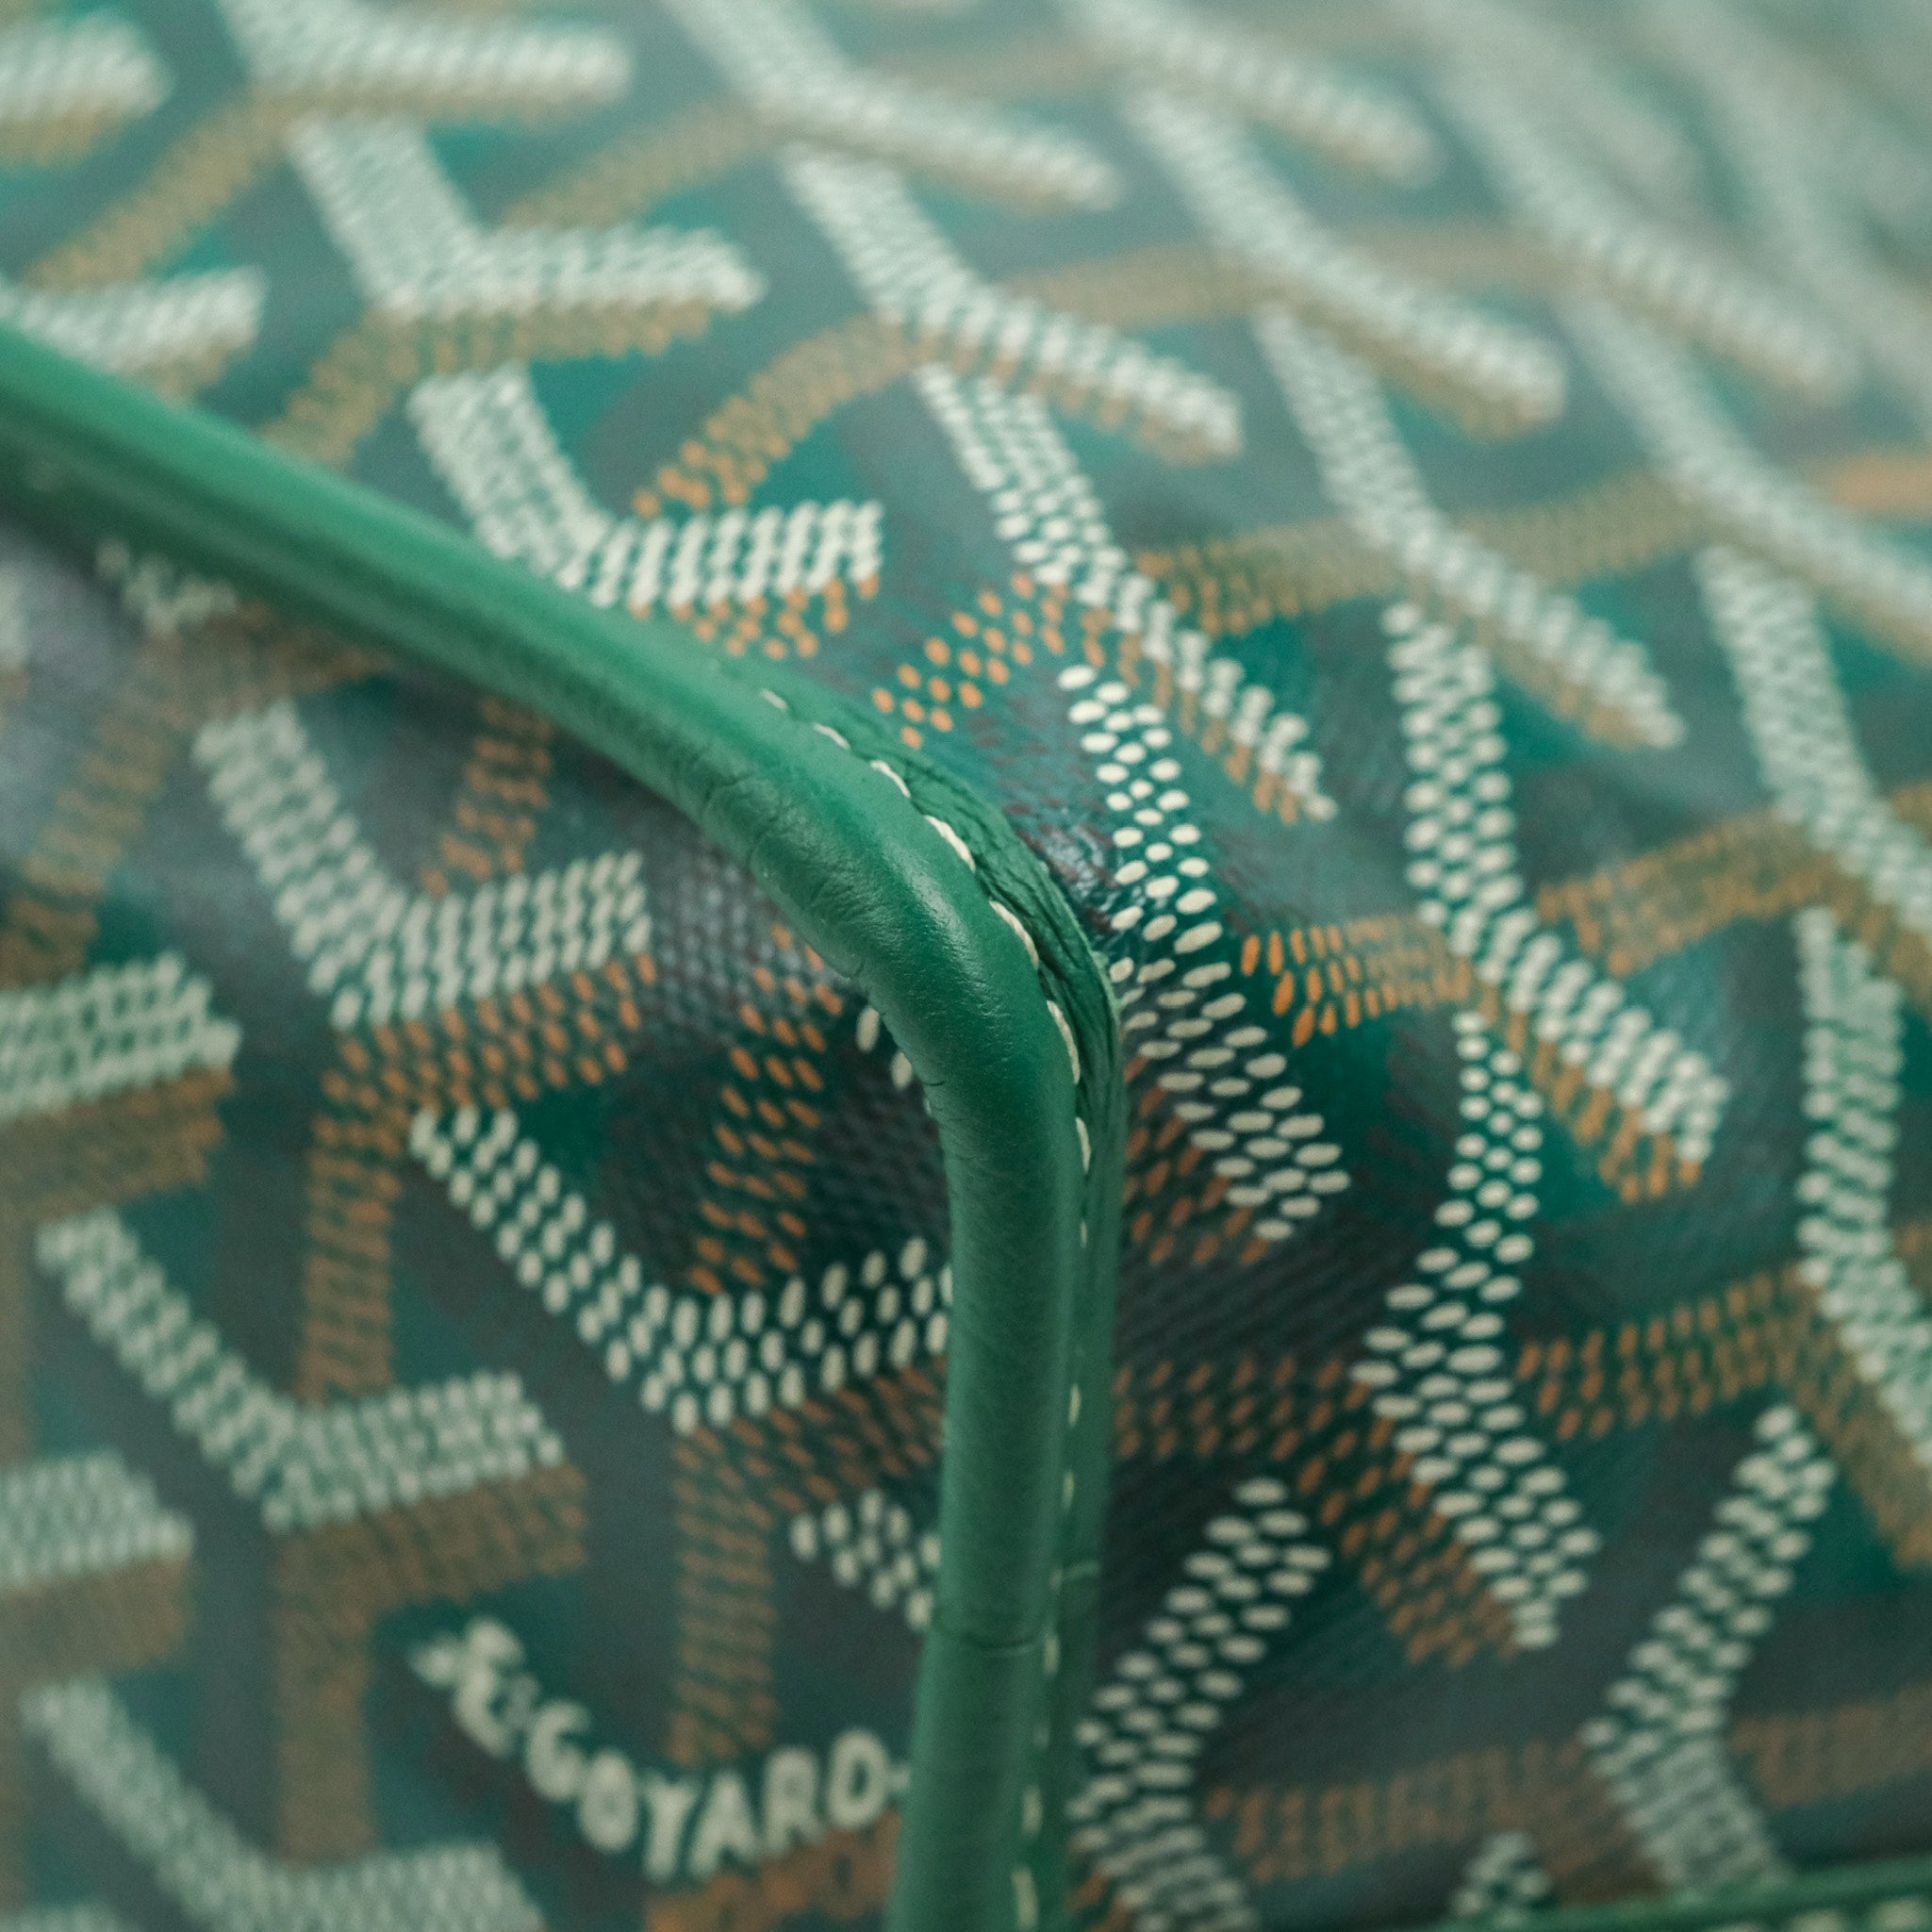 Goyard - Anjou Mini Bag - Green – Shop It